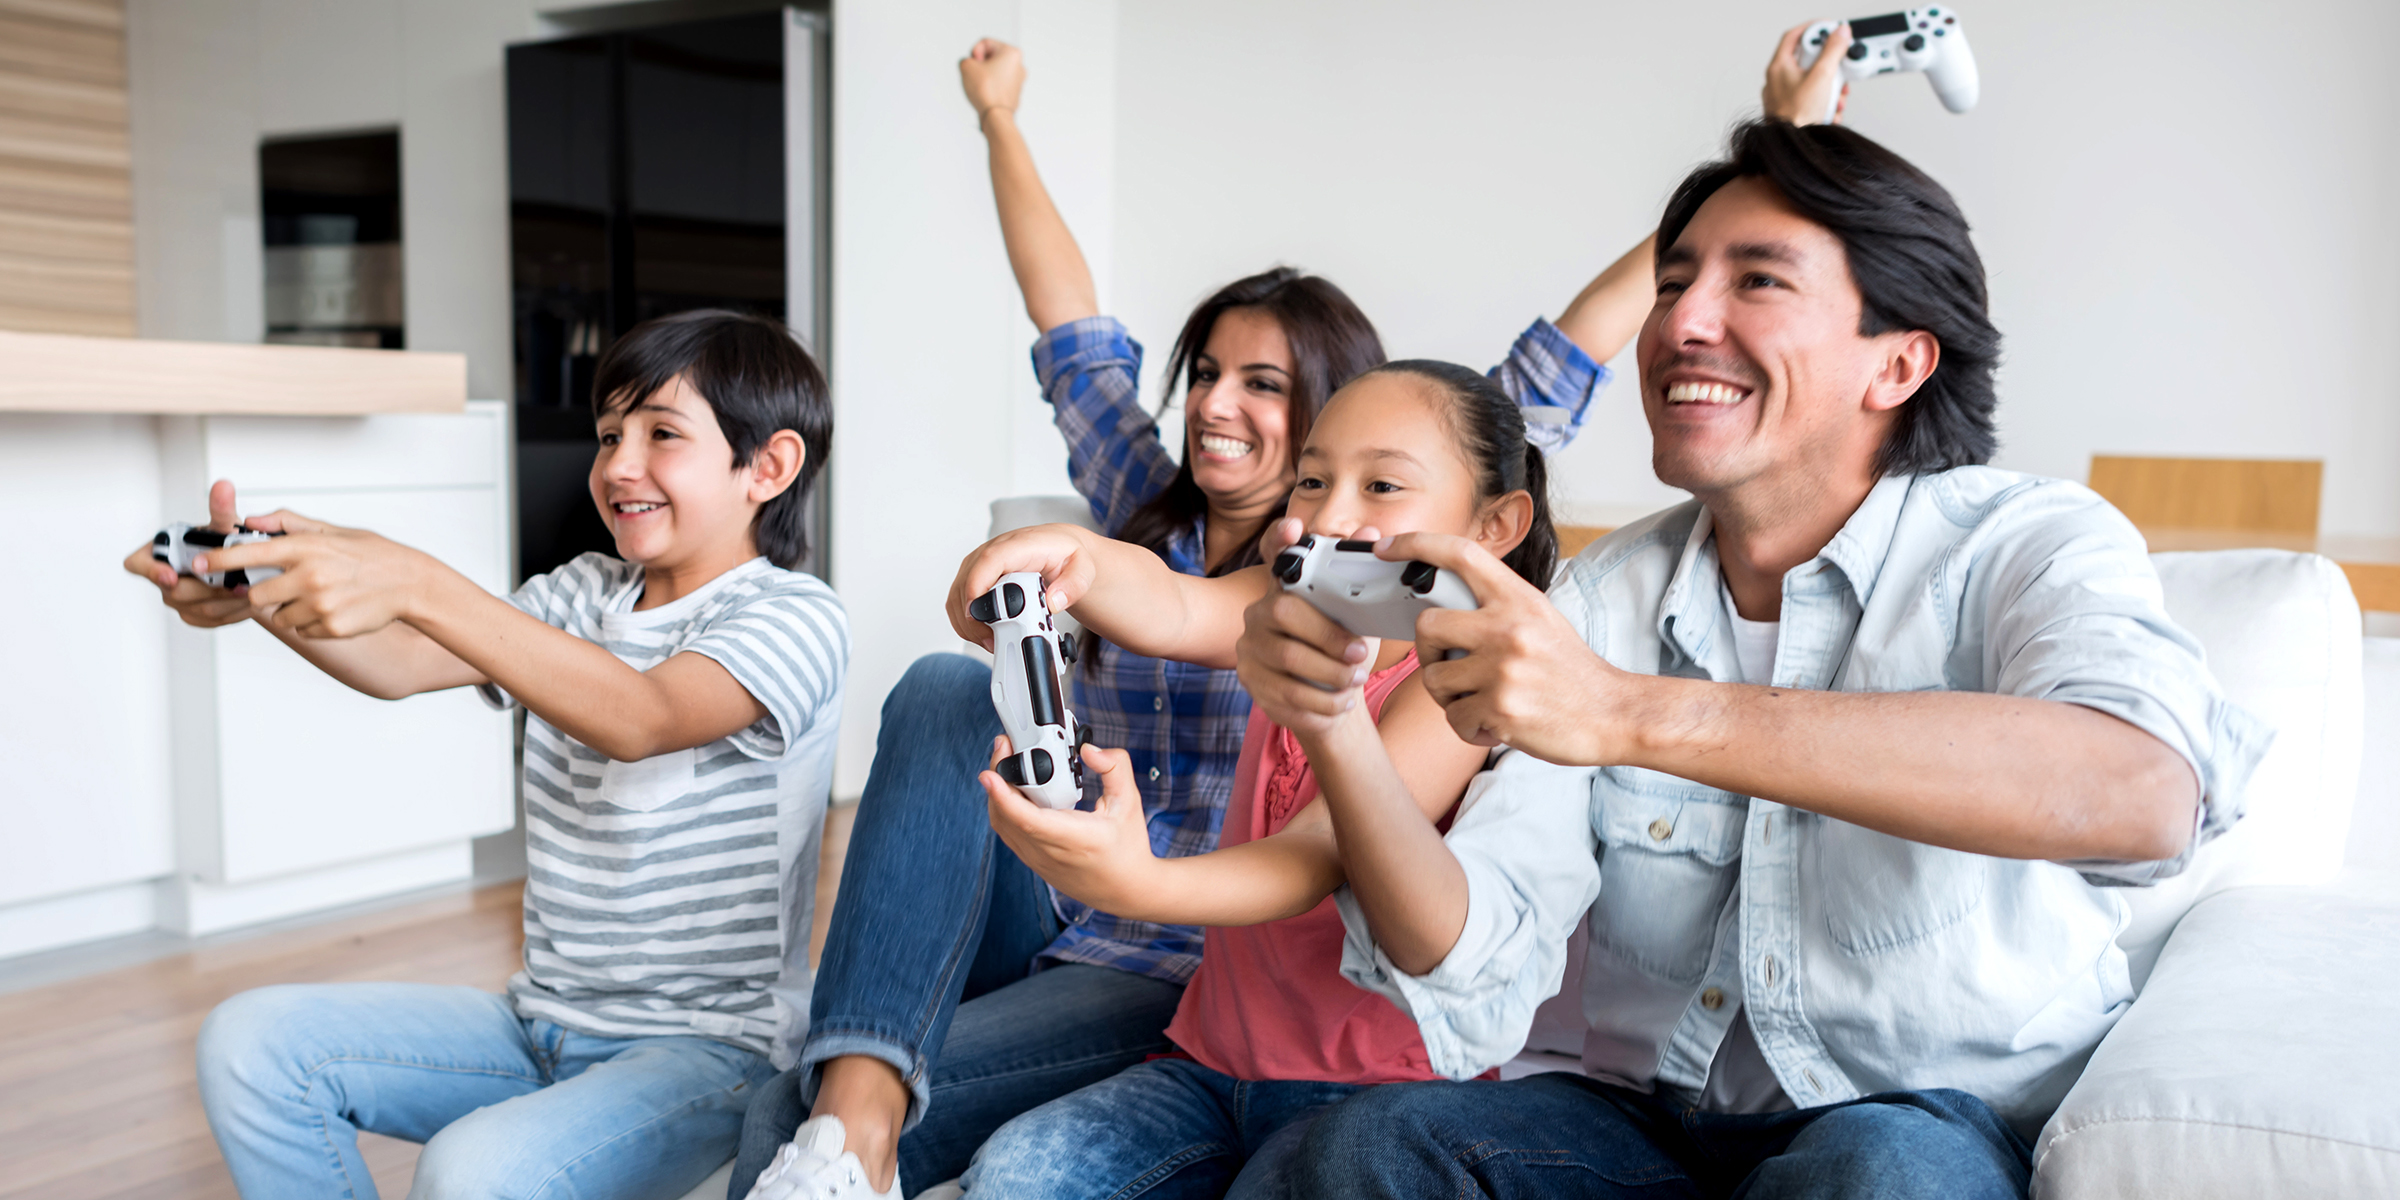 family bonding over video games